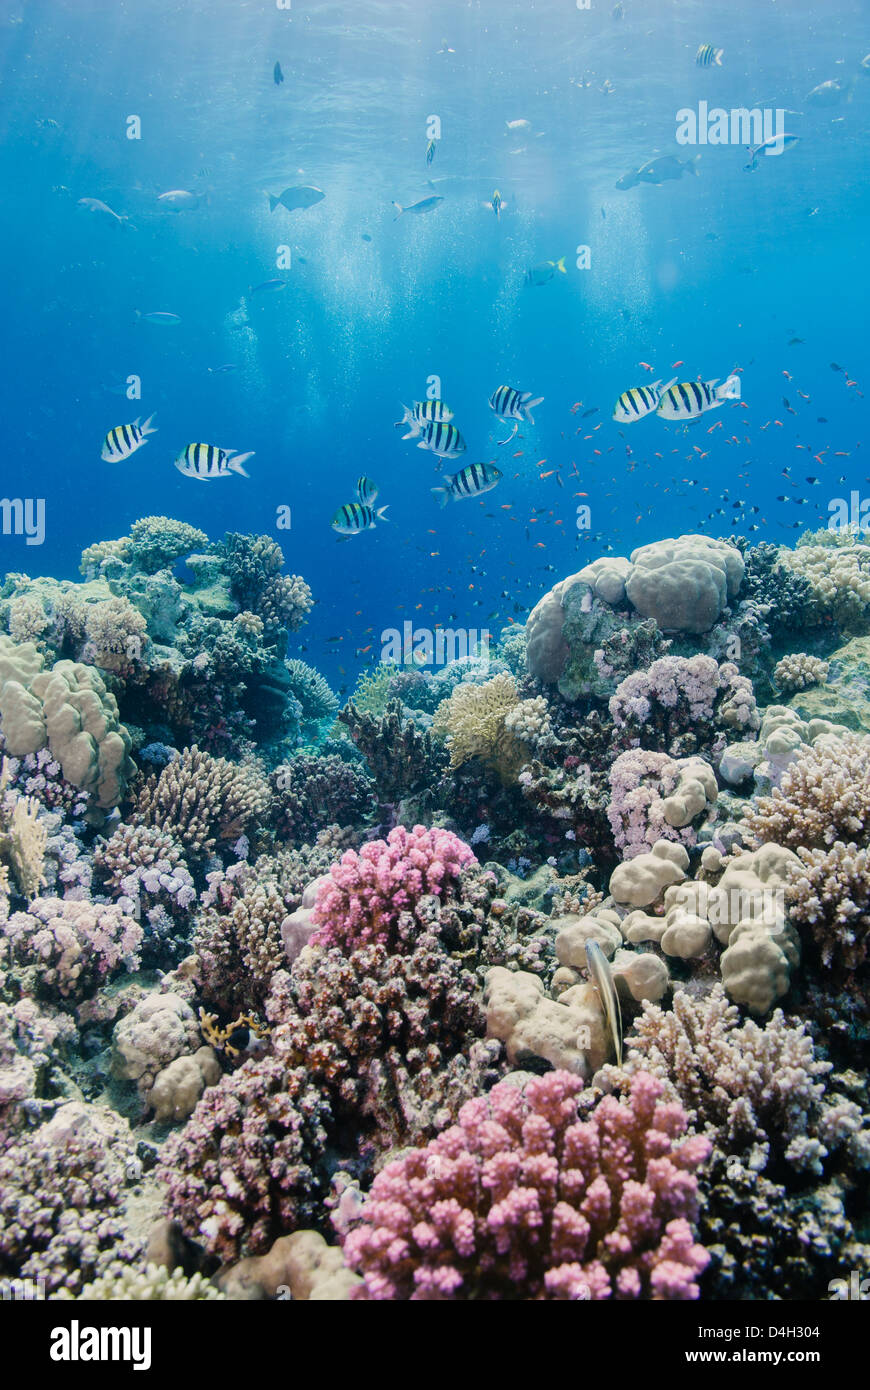 Arrecifes de coral tropicales y de la escena, el Parque Nacional de Ras Mohammed, off, el Sinaí de Sharm el Sheikh, Egipto, el Mar Rojo, en el norte de África Foto de stock